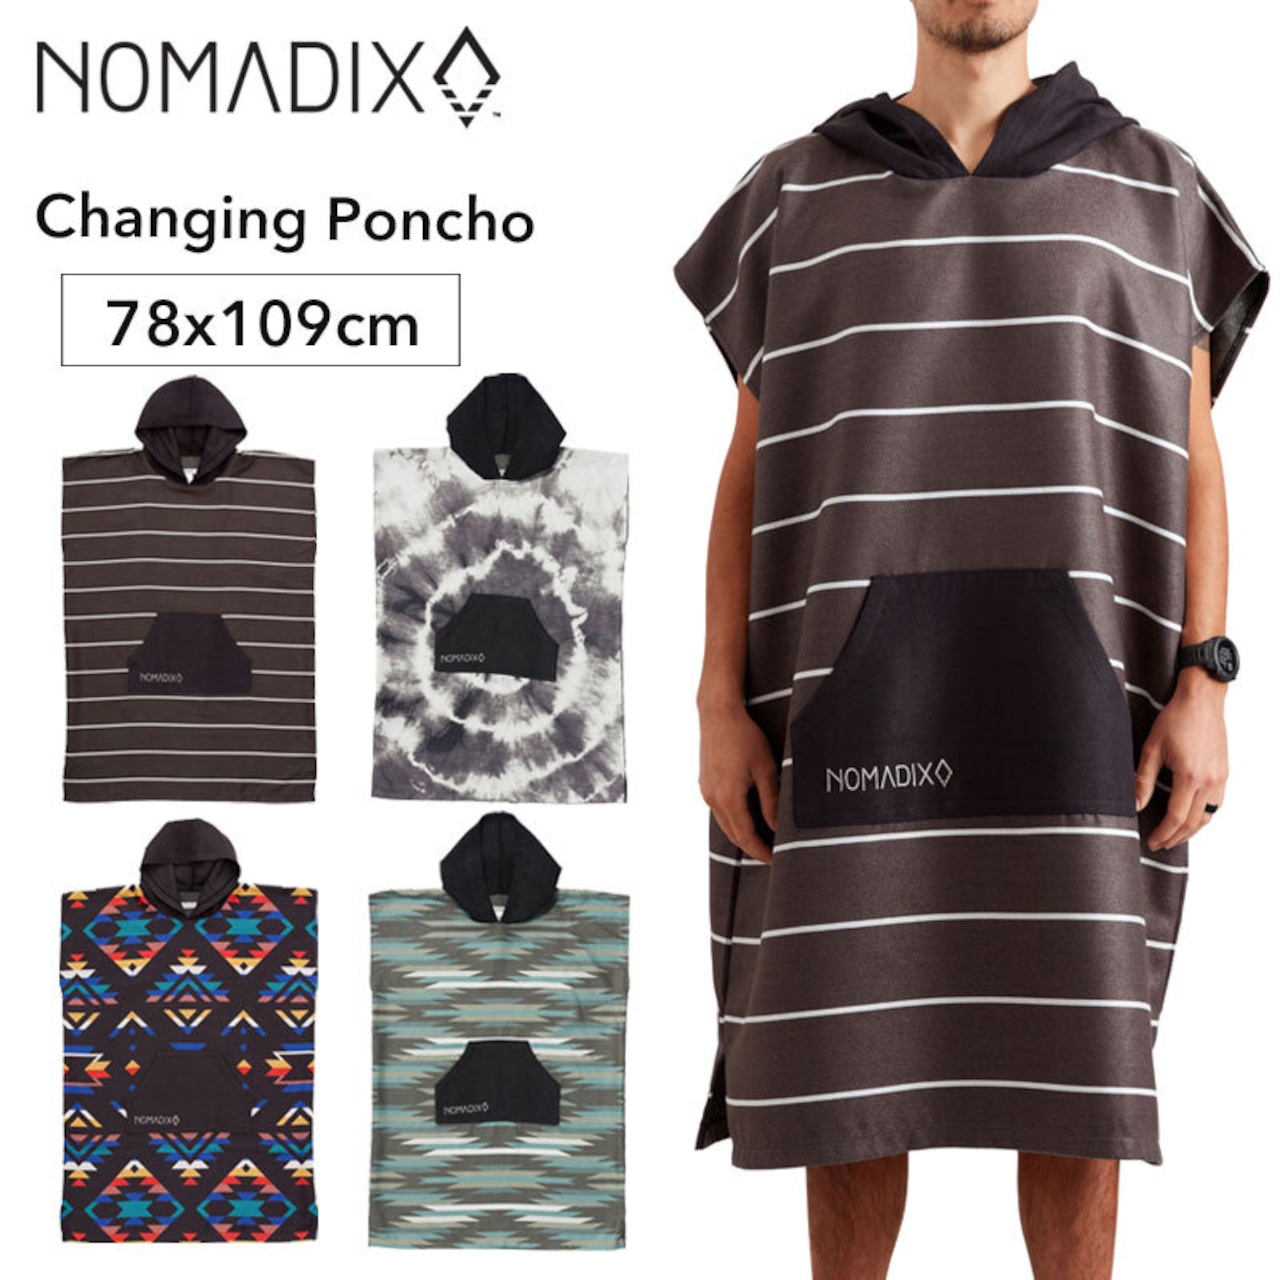 NOMADIX ノマディックス Nomadix Changing Poncho チェンジング ポンチョ タオル パーカー キャンプ 旅行 アウトドア 用品 キャンプ グッズ